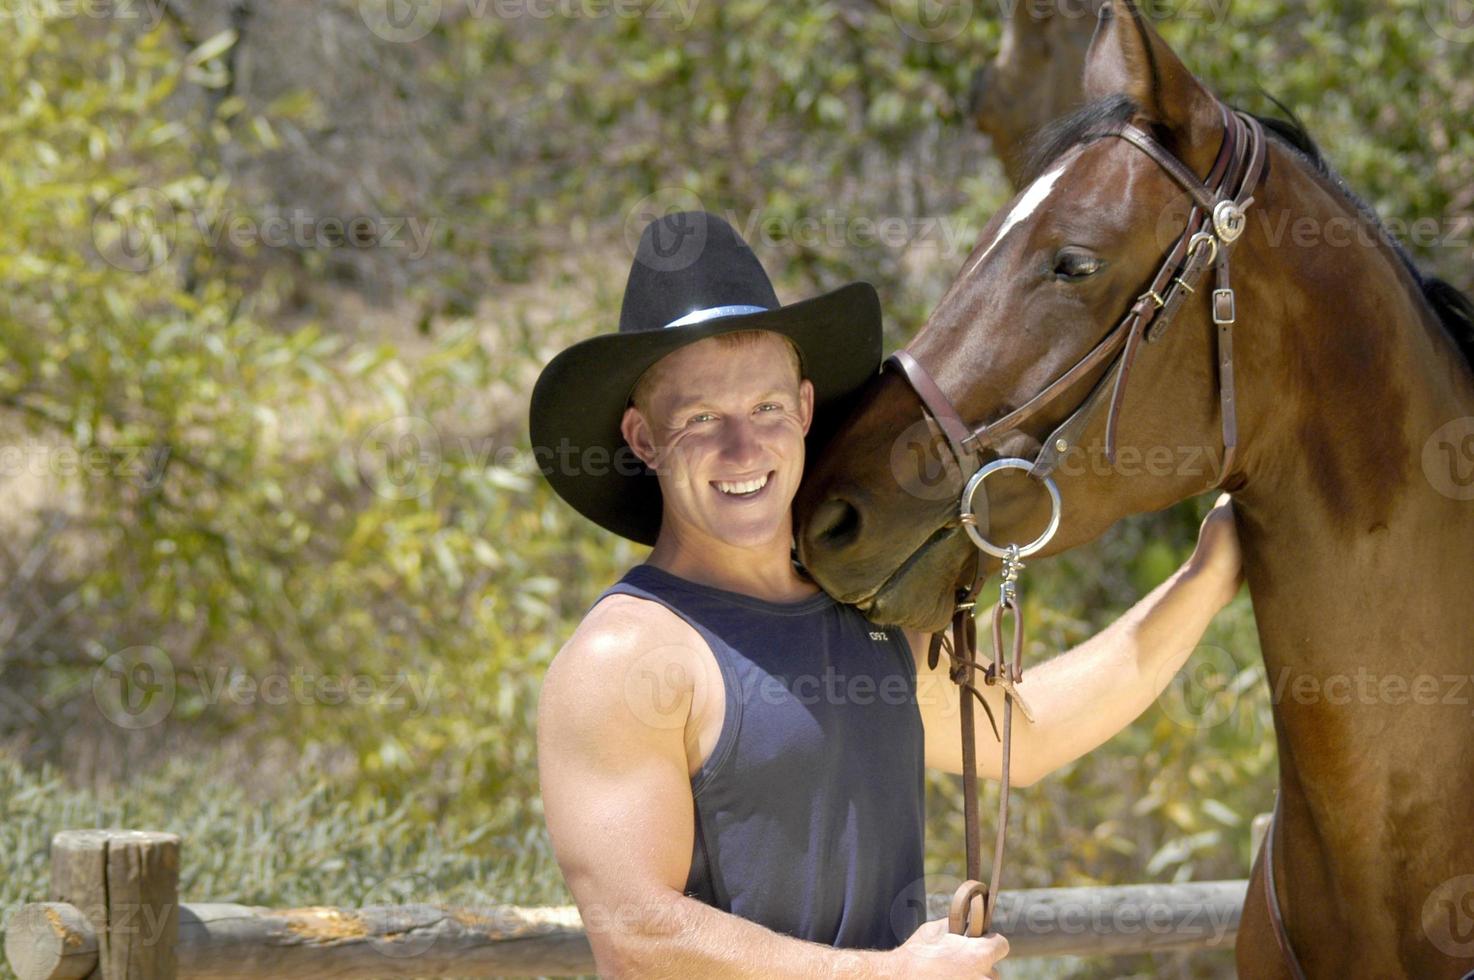 gut aussehend Cowboy haben ein Spaß Foto schießen mit seine Pferd.